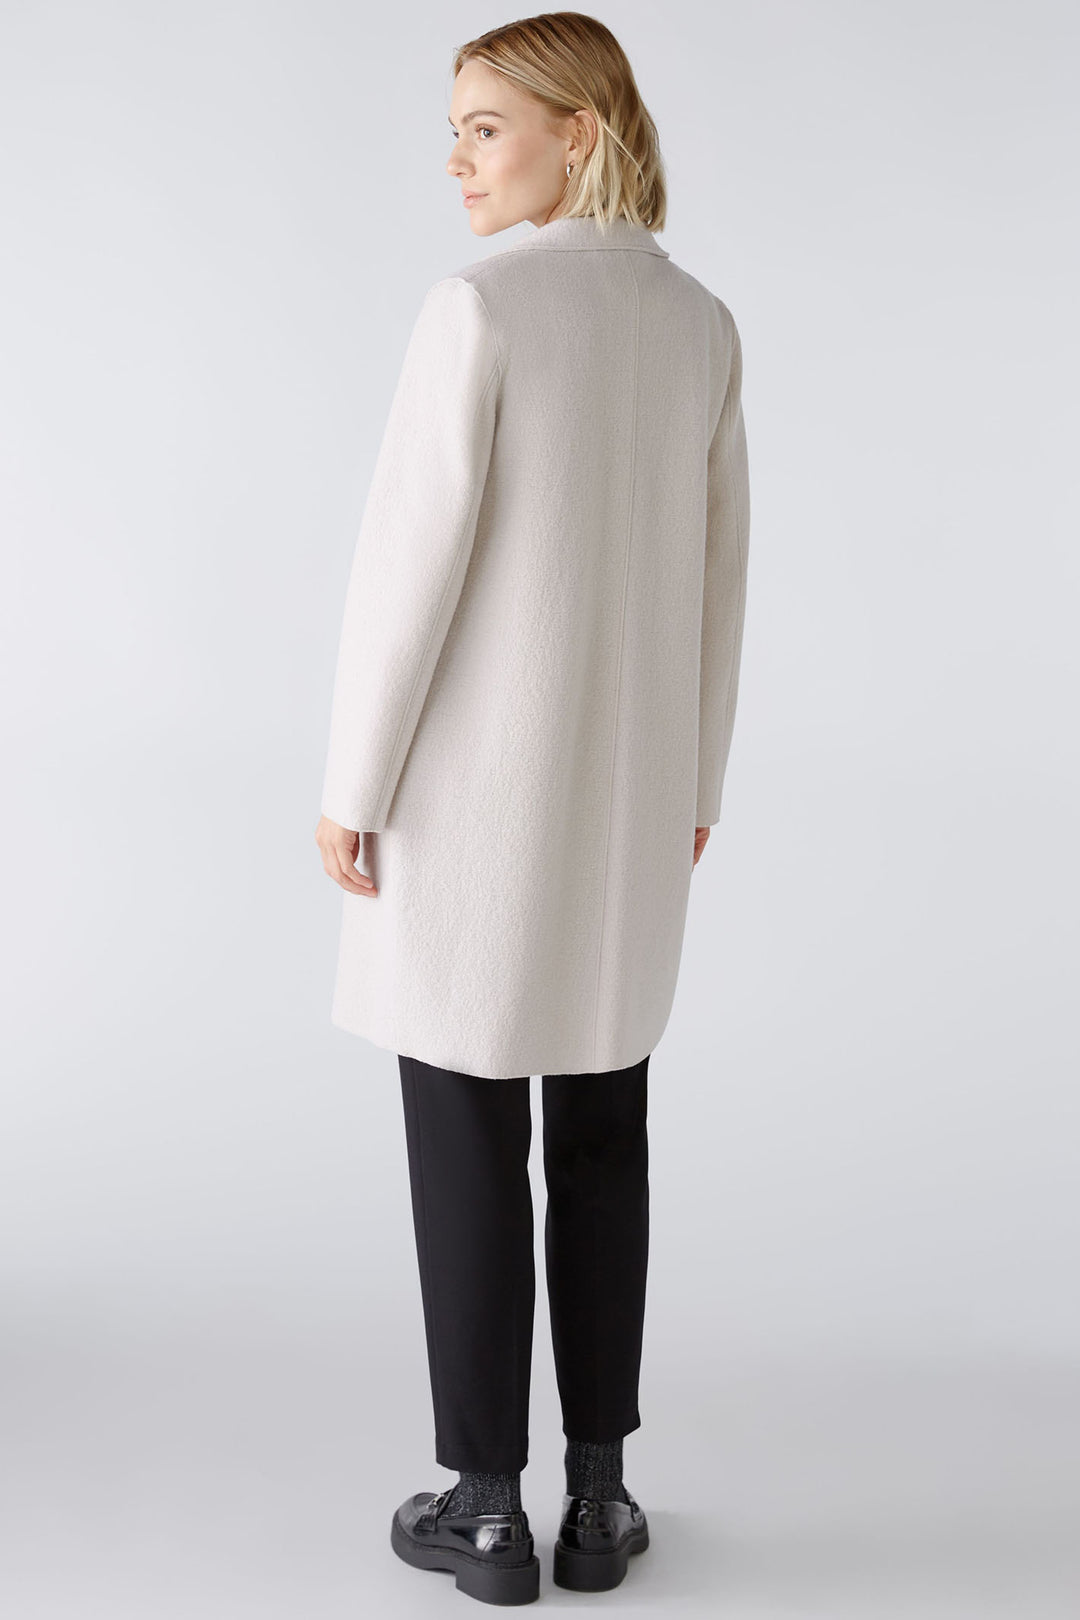 Oui 79918 Stone Melange Wool Coat - Shirley Allum Boutique